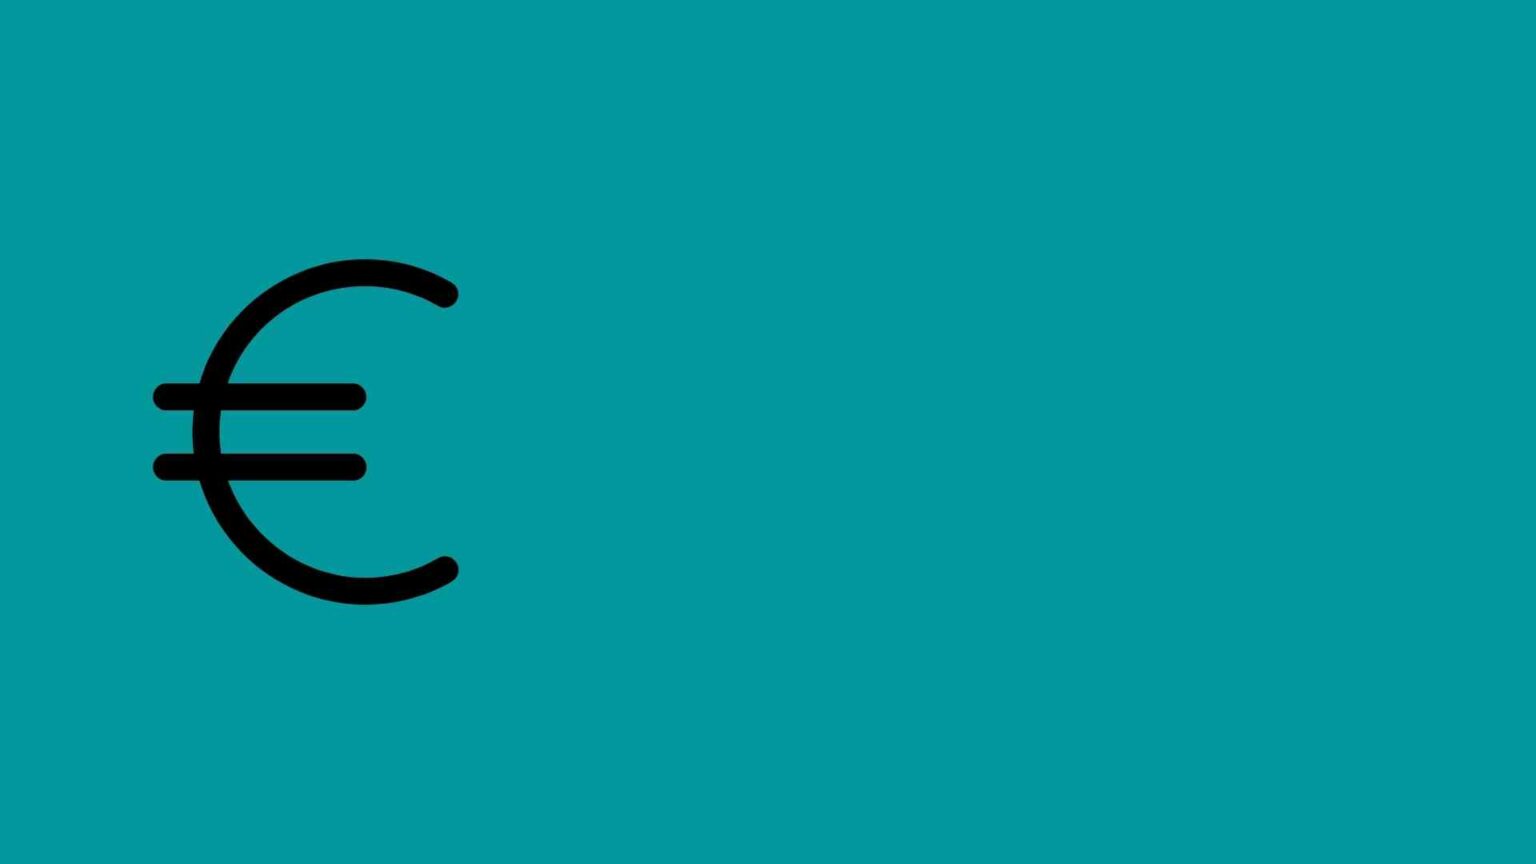 Pound to Euro .16 – 0.0053